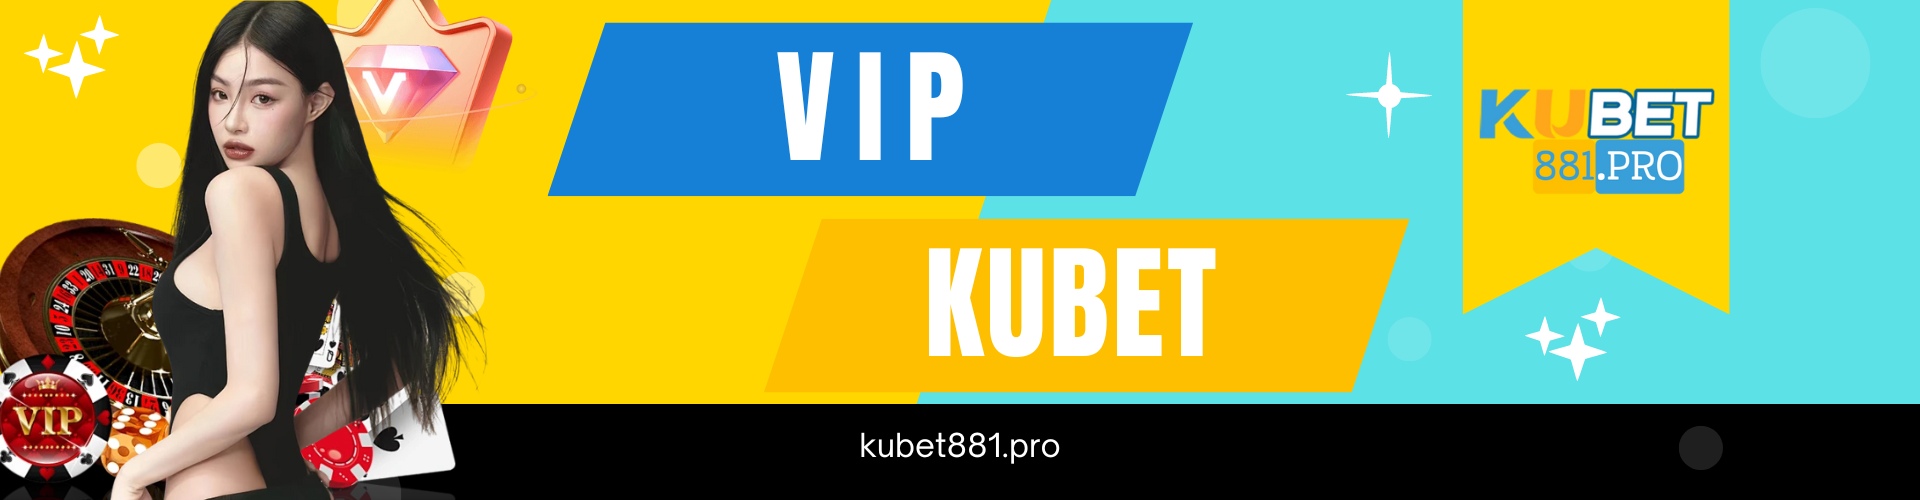 VIP Kubet